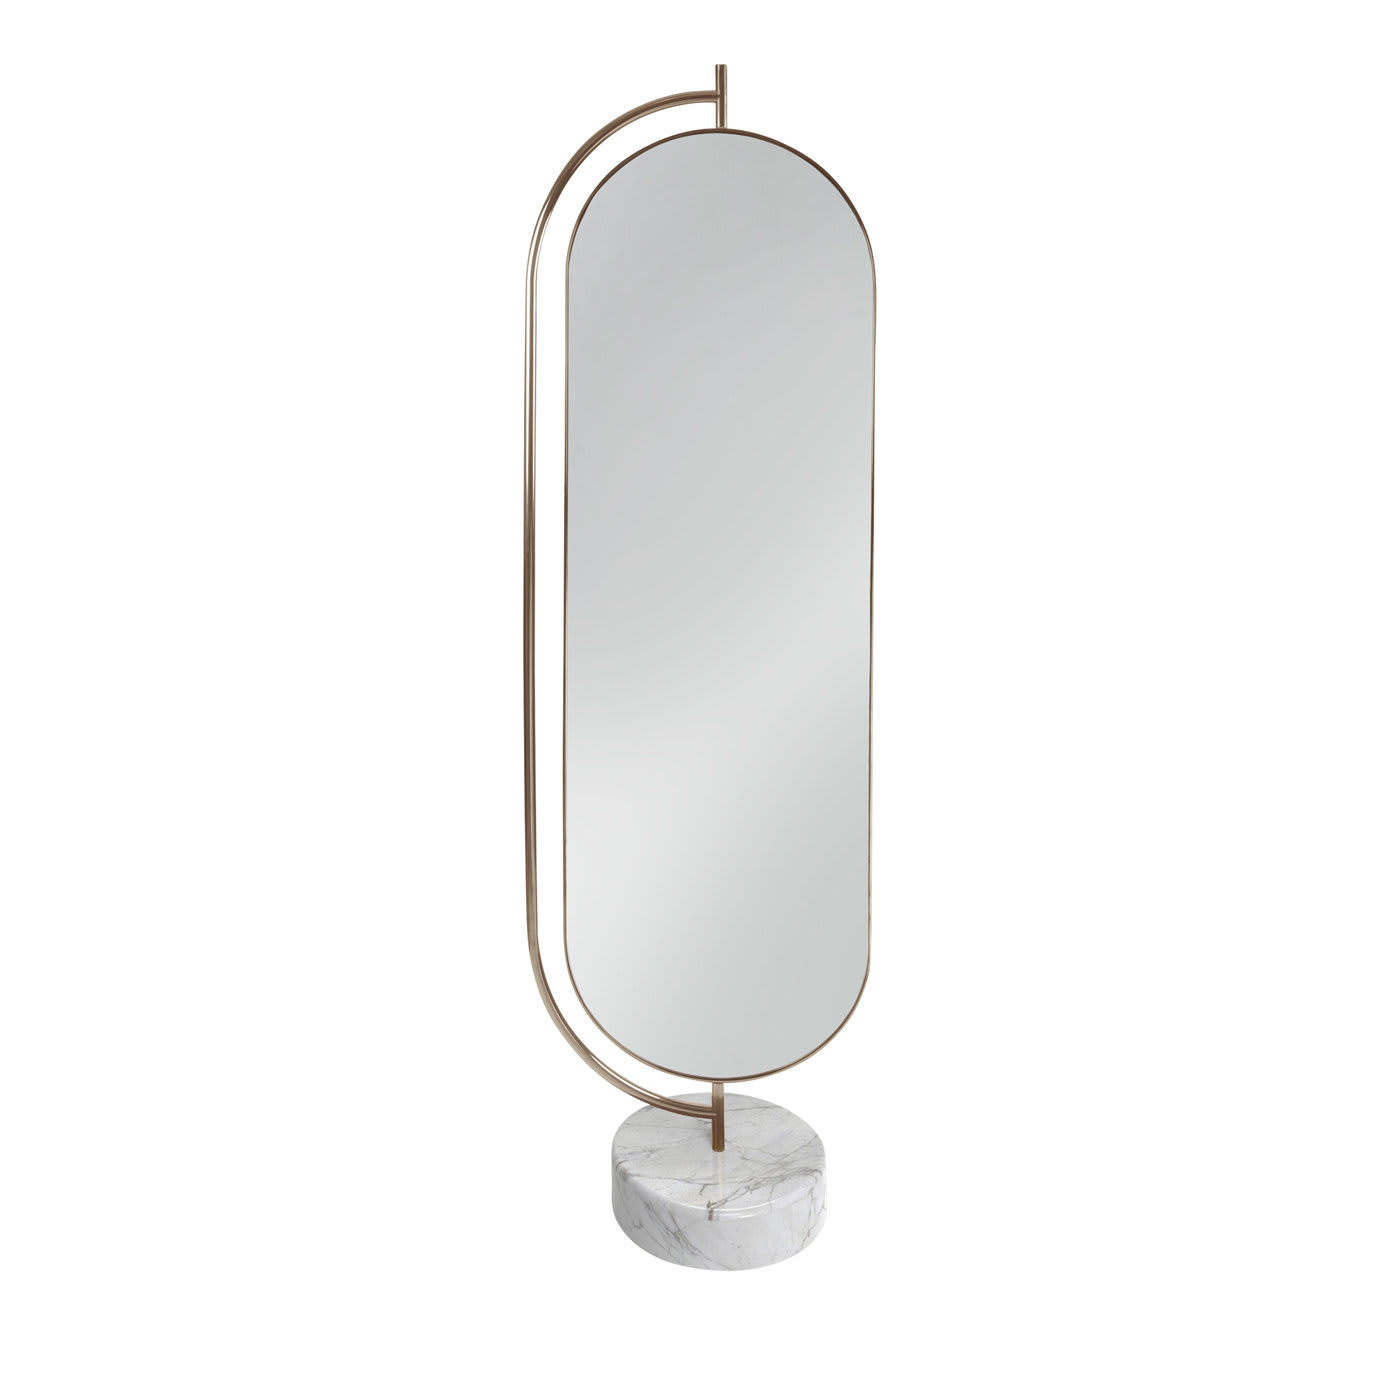 Giove Mirror with Calacatta Oro Marble - Secolo